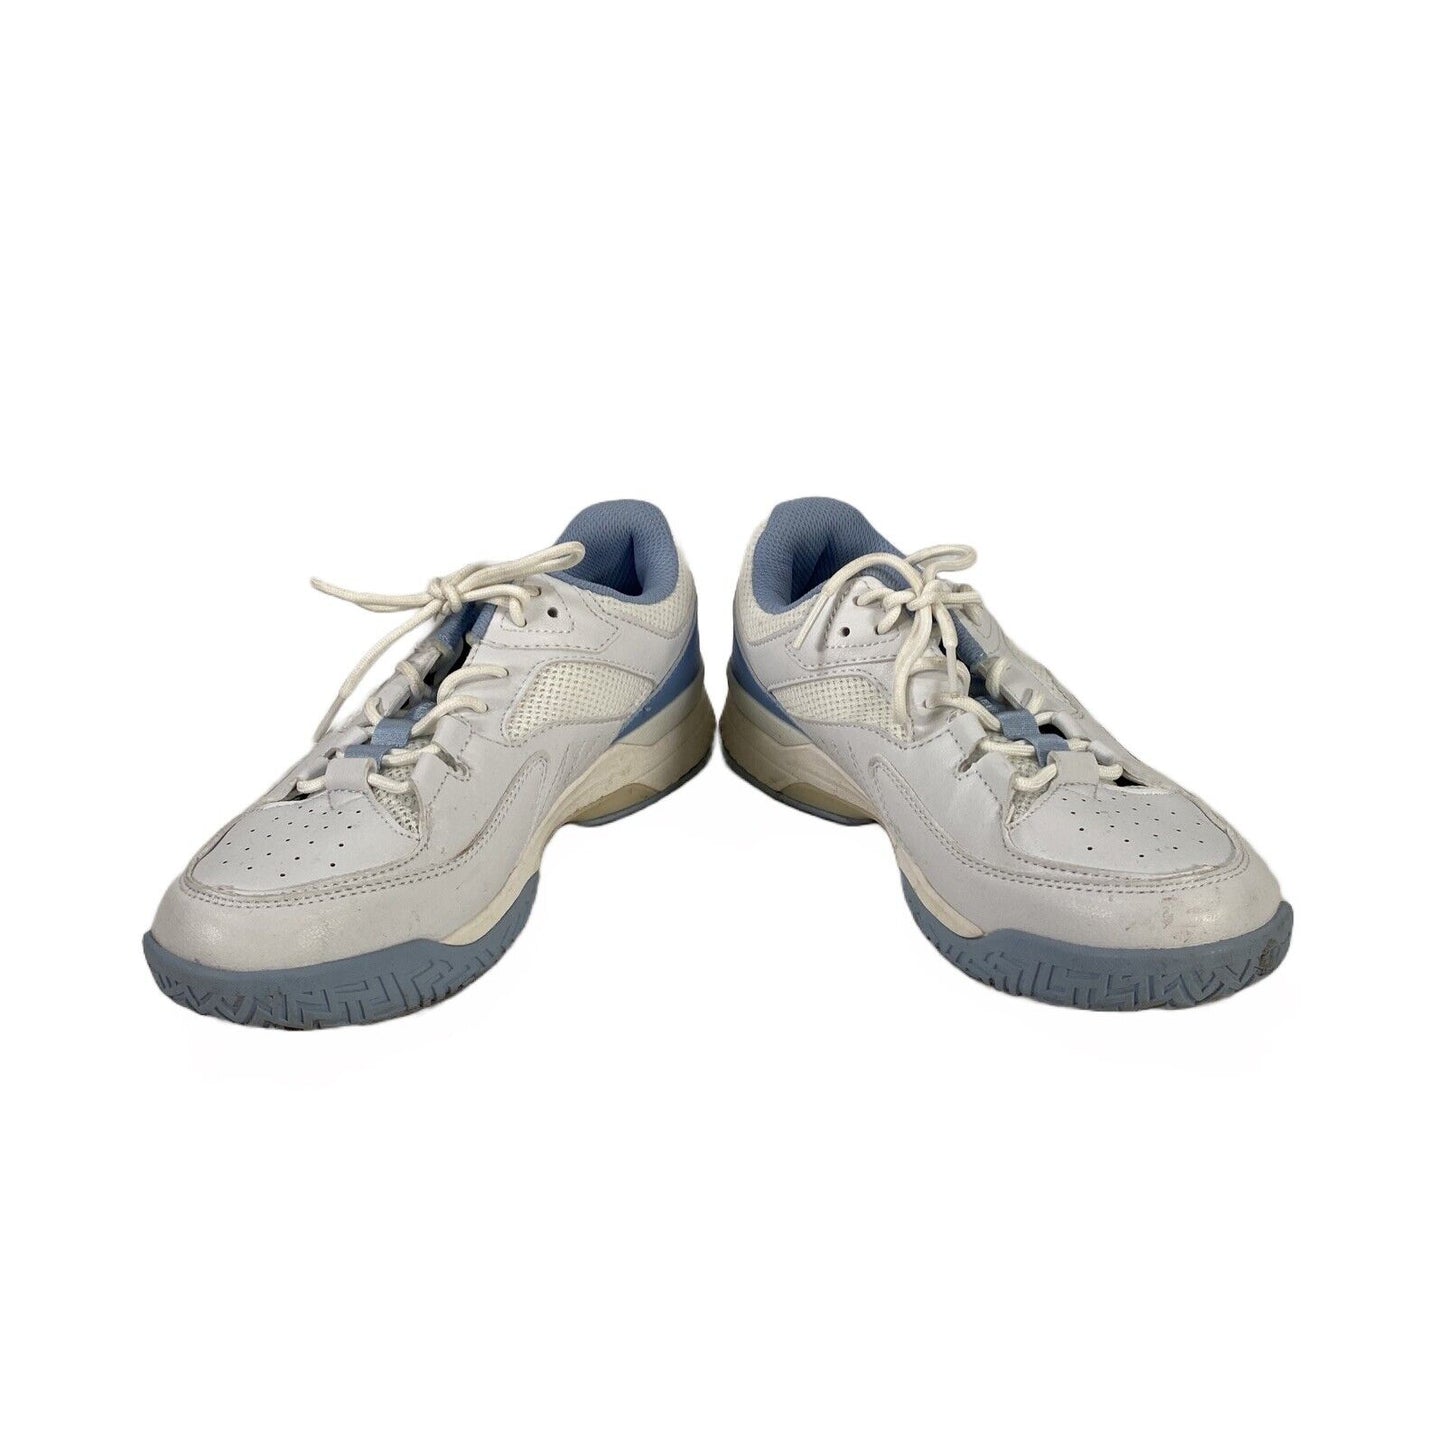 FitVille - Zapatos cómodos para caminar con cordones, color blanco y azul, para mujer, 8 de ancho